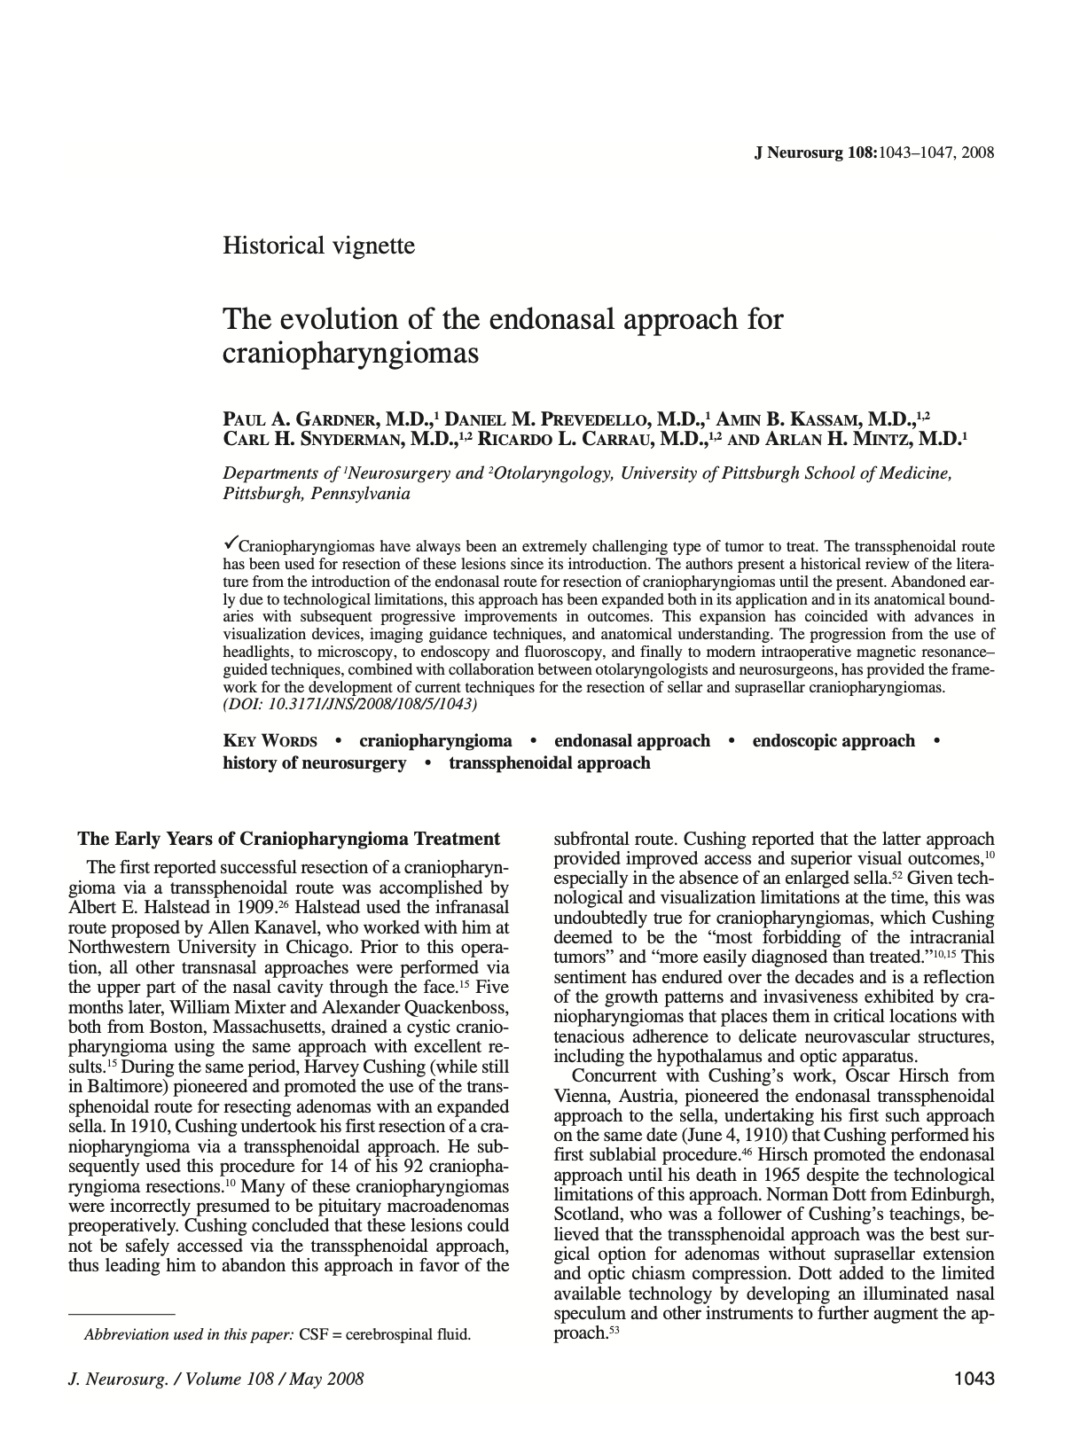 The evolution of the endonasal approach for craniopharyngiomas